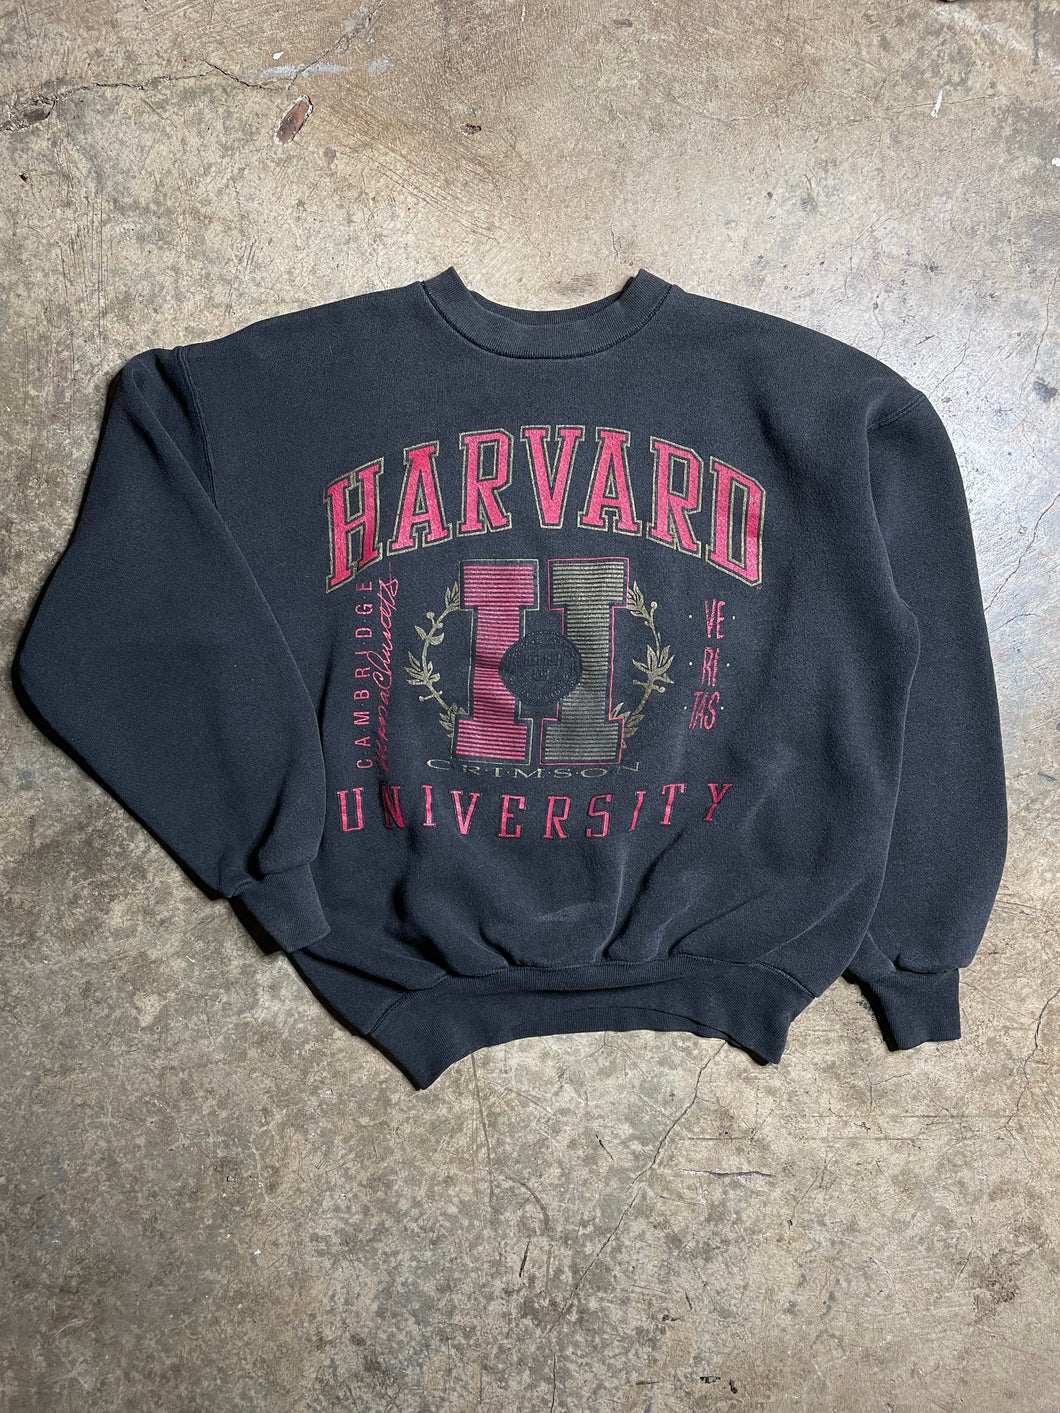 90’s Harvard Crewneck - M/L